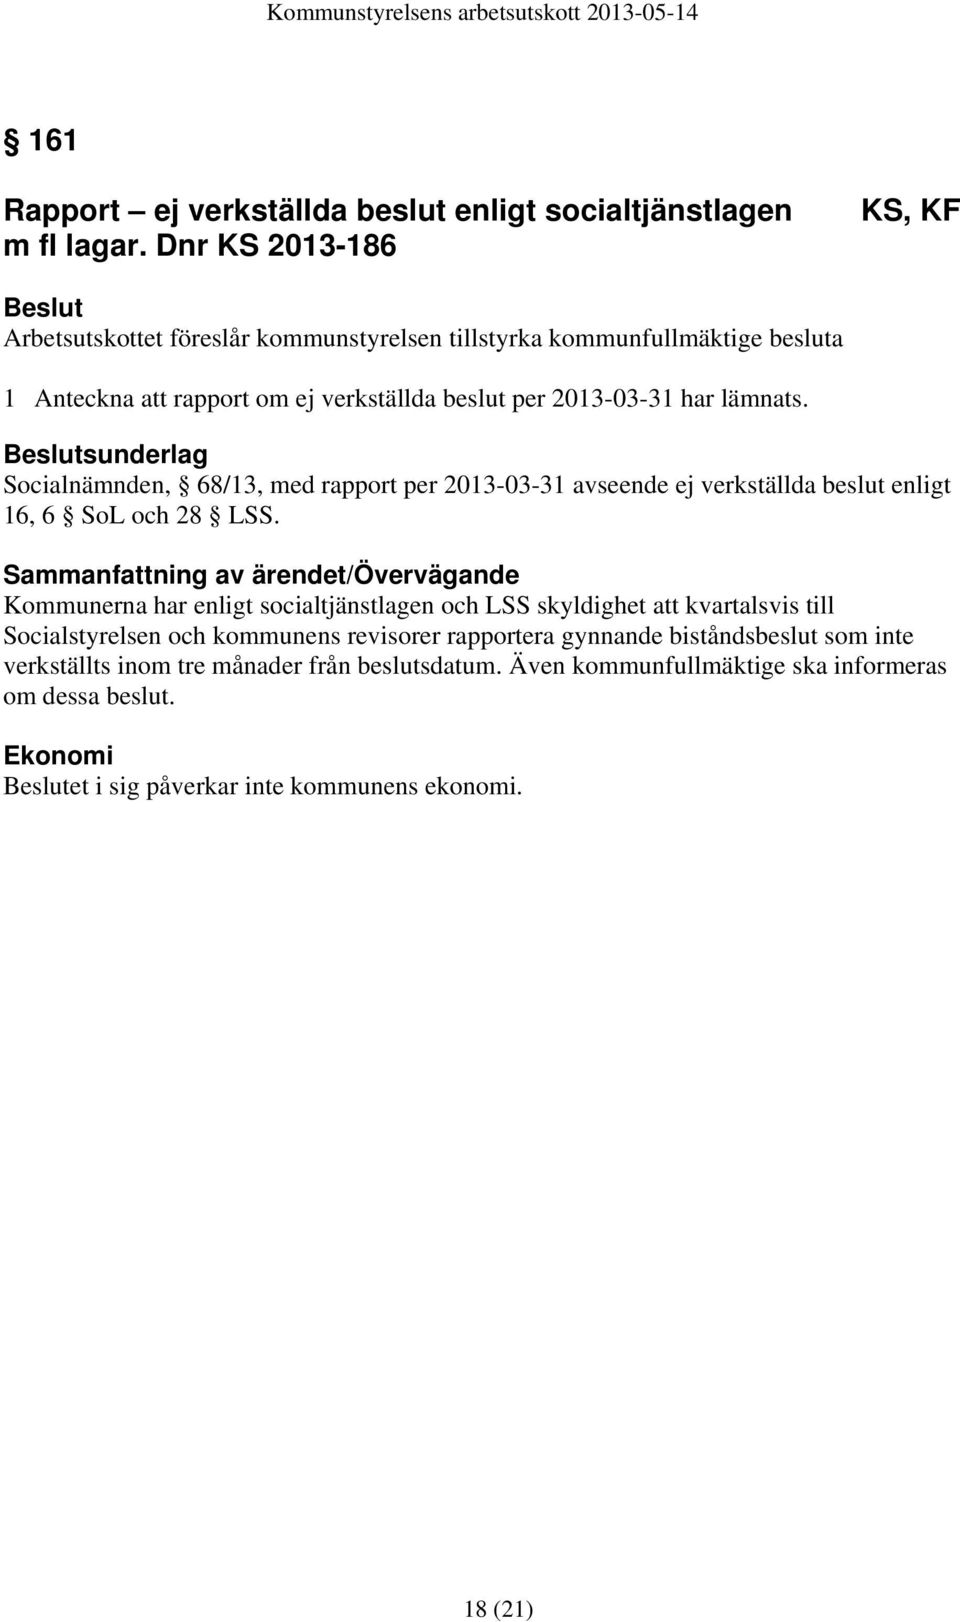 lämnats. sunderlag Socialnämnden, 68/13, med rapport per 2013-03-31 avseende ej verkställda beslut enligt 16, 6 SoL och 28 LSS.